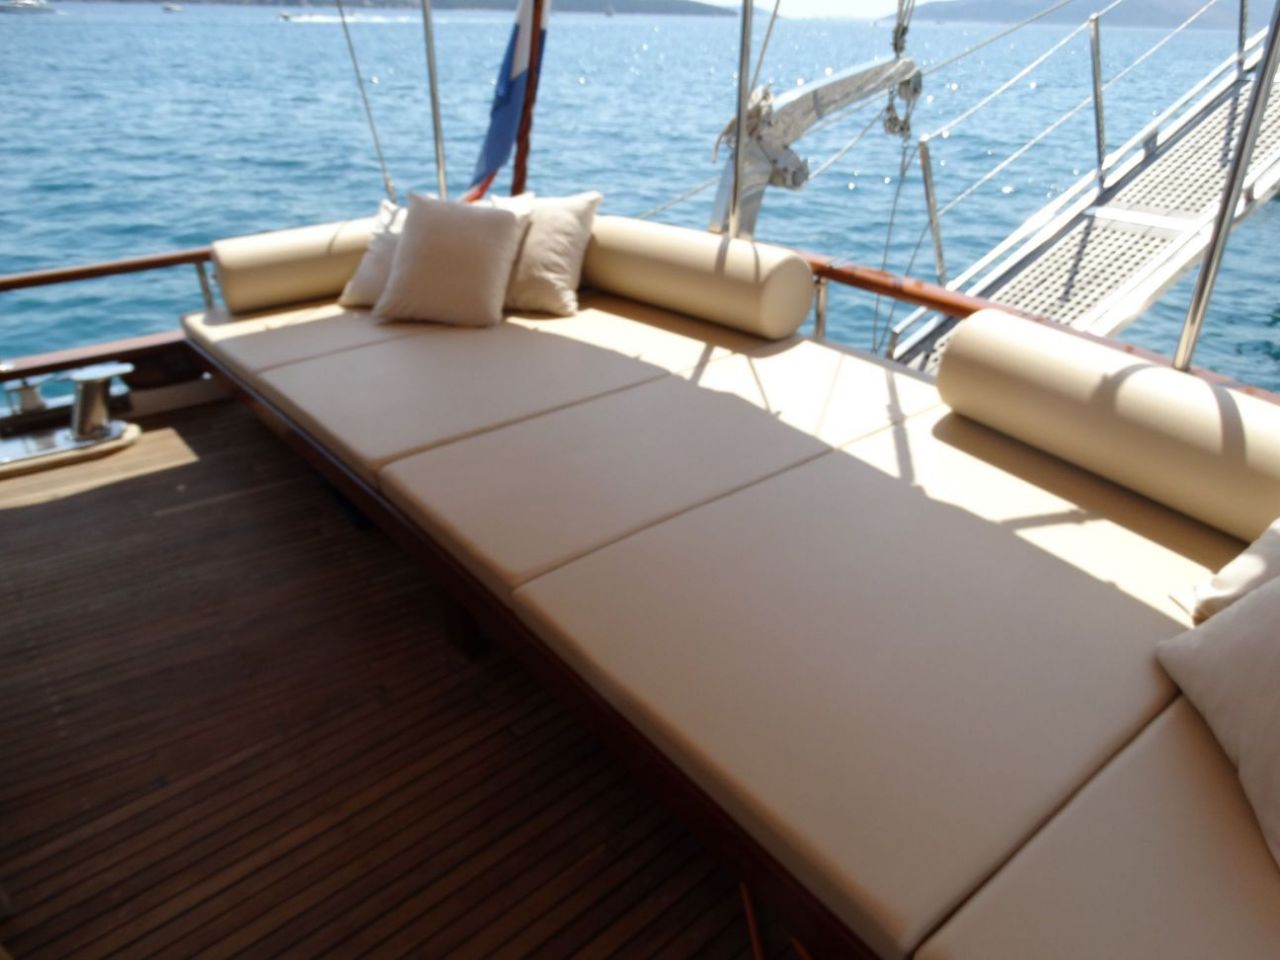 Malena charter yacht croatia